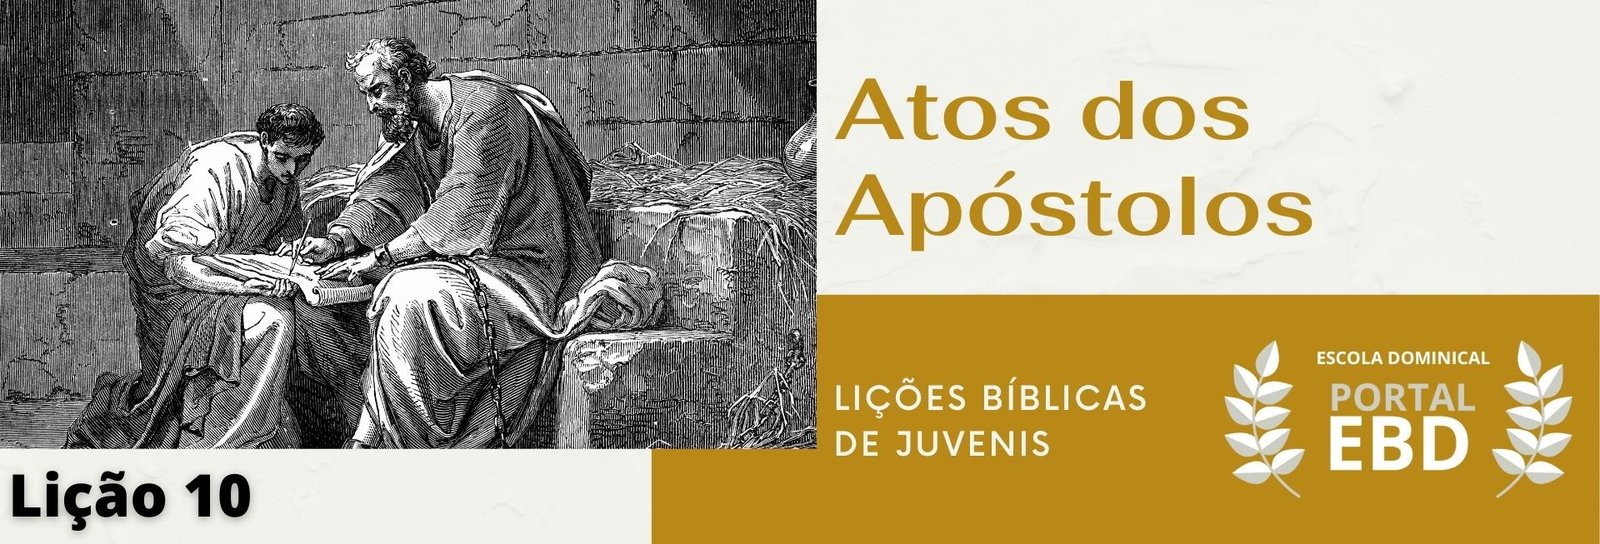 Lição 10 - Atos dos Apóstolos I